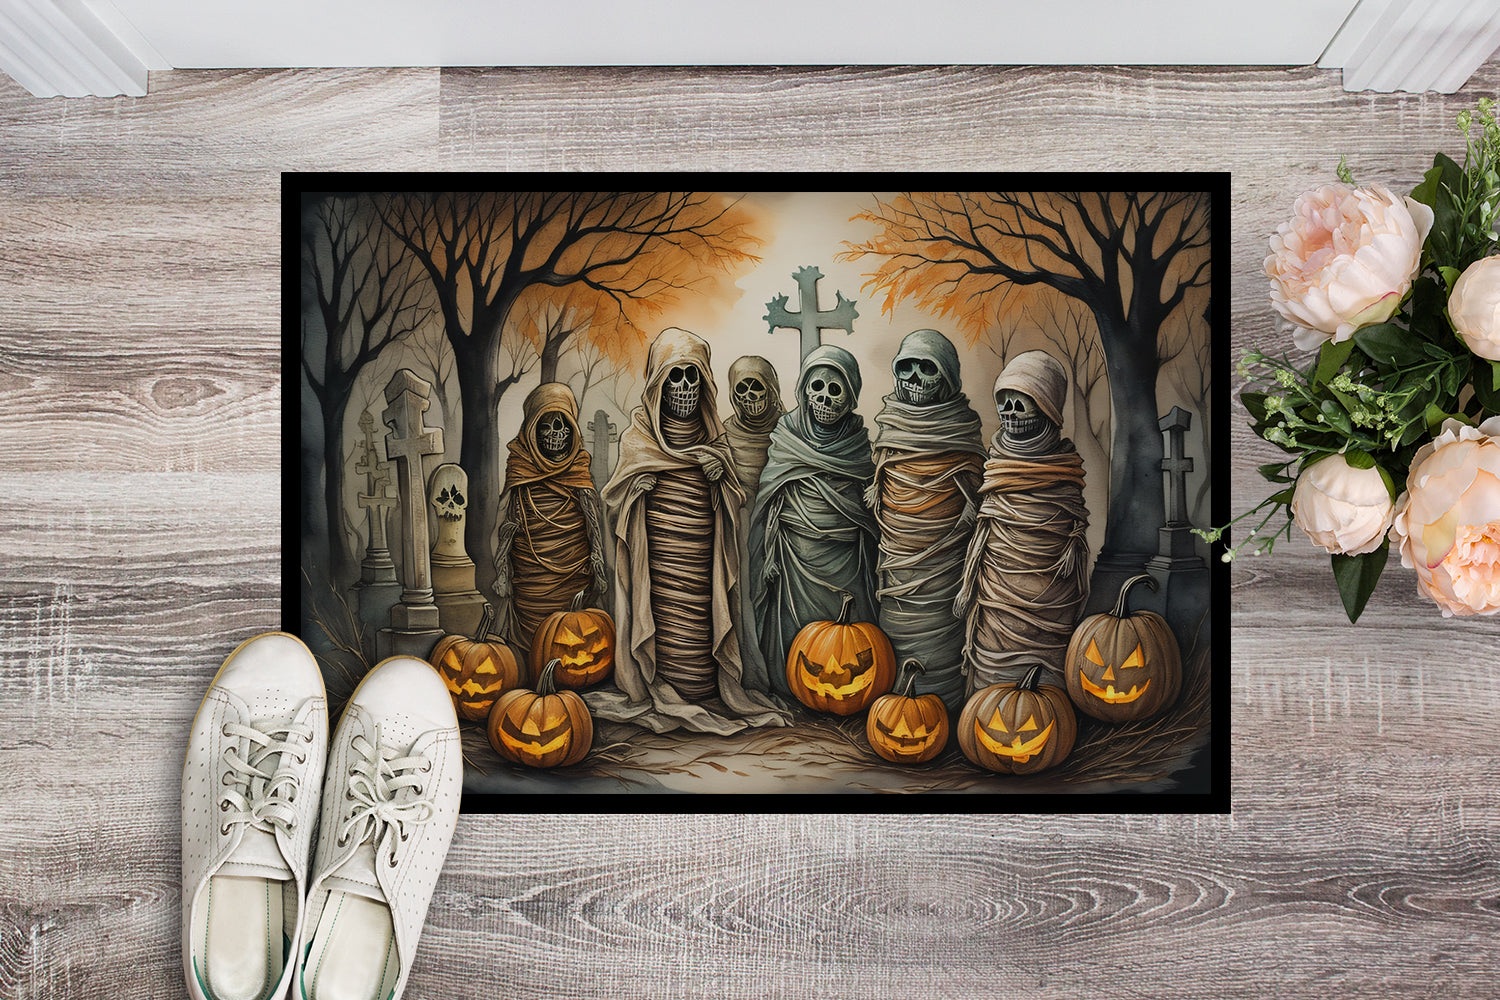 Buy this Mummies Spooky Halloween Doormat 18x27